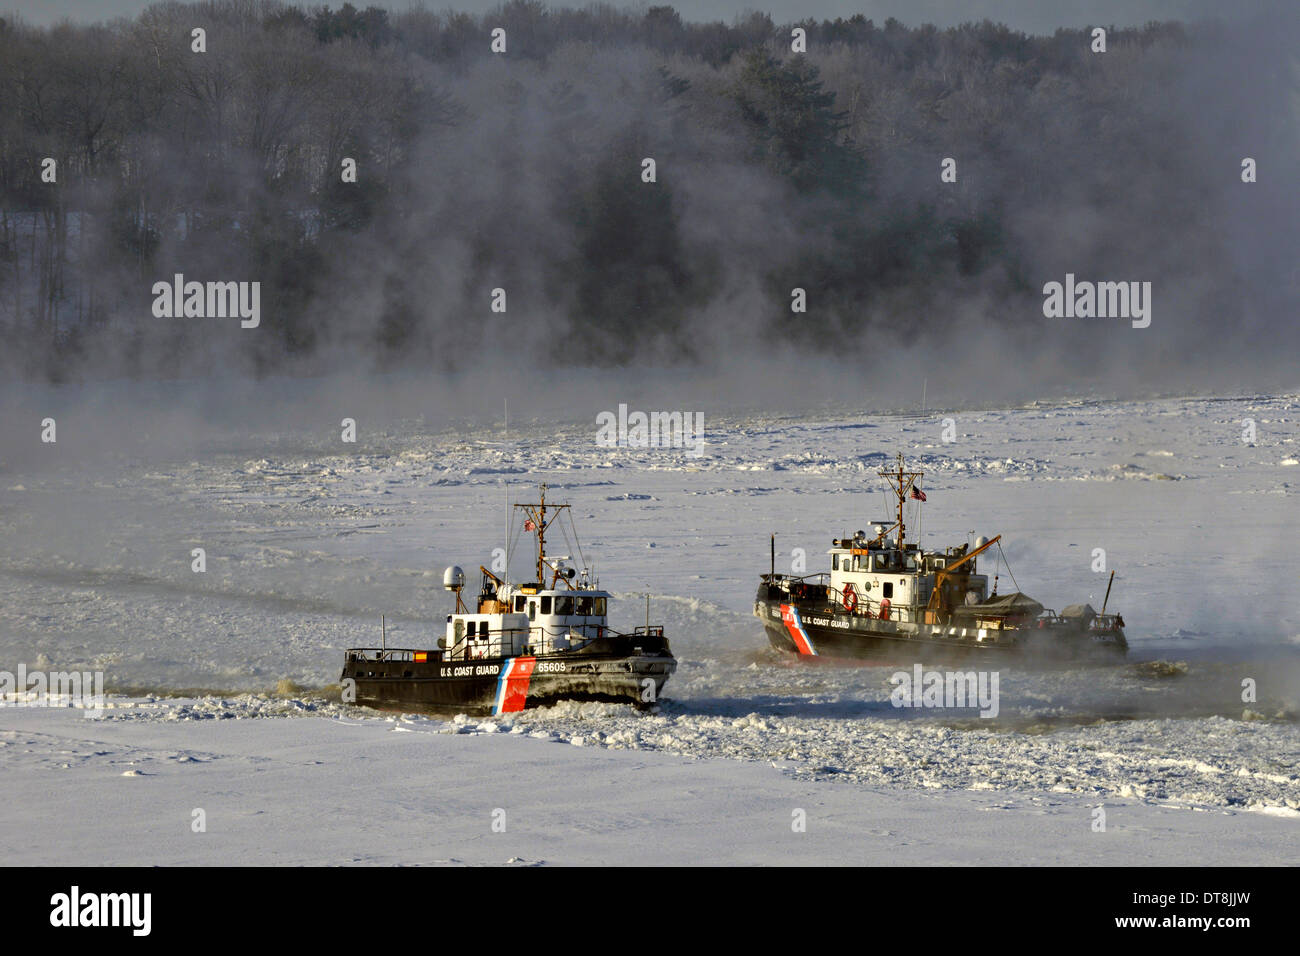 US Coast Guard 65-piede taglierine Grillo e ad affrontare il problema di rottura attraverso quasi 20 pollici da uno spesso strato di ghiaccio per consentire aprire il flusso di acqua lungo il fiume Penobscot Febbraio 11, 2014 in Brewer, Maine. Foto Stock